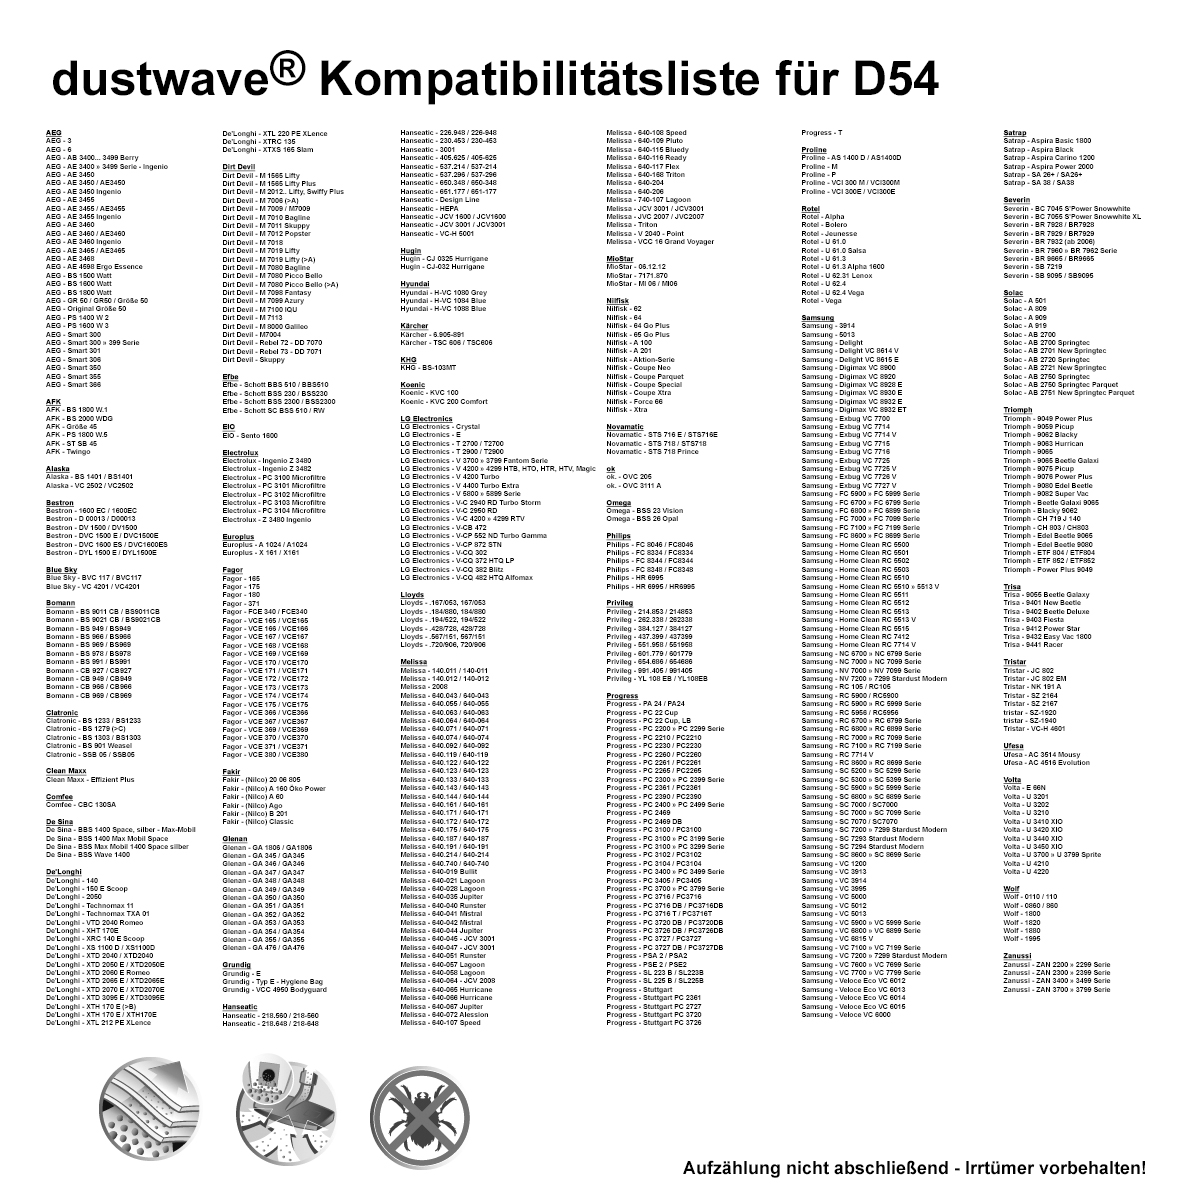 Dustwave® 1 Staubsaugerbeutel für Progress Stuttgart PC 2380, PC 2385, PC 2390, PC 3106, PC 3625, PC 3626, PC 3700, PC 3716, PC 3717, PC 3720, PC 3726, PC 3727 - hocheffizient mit Hygieneverschluss - Made in Germany